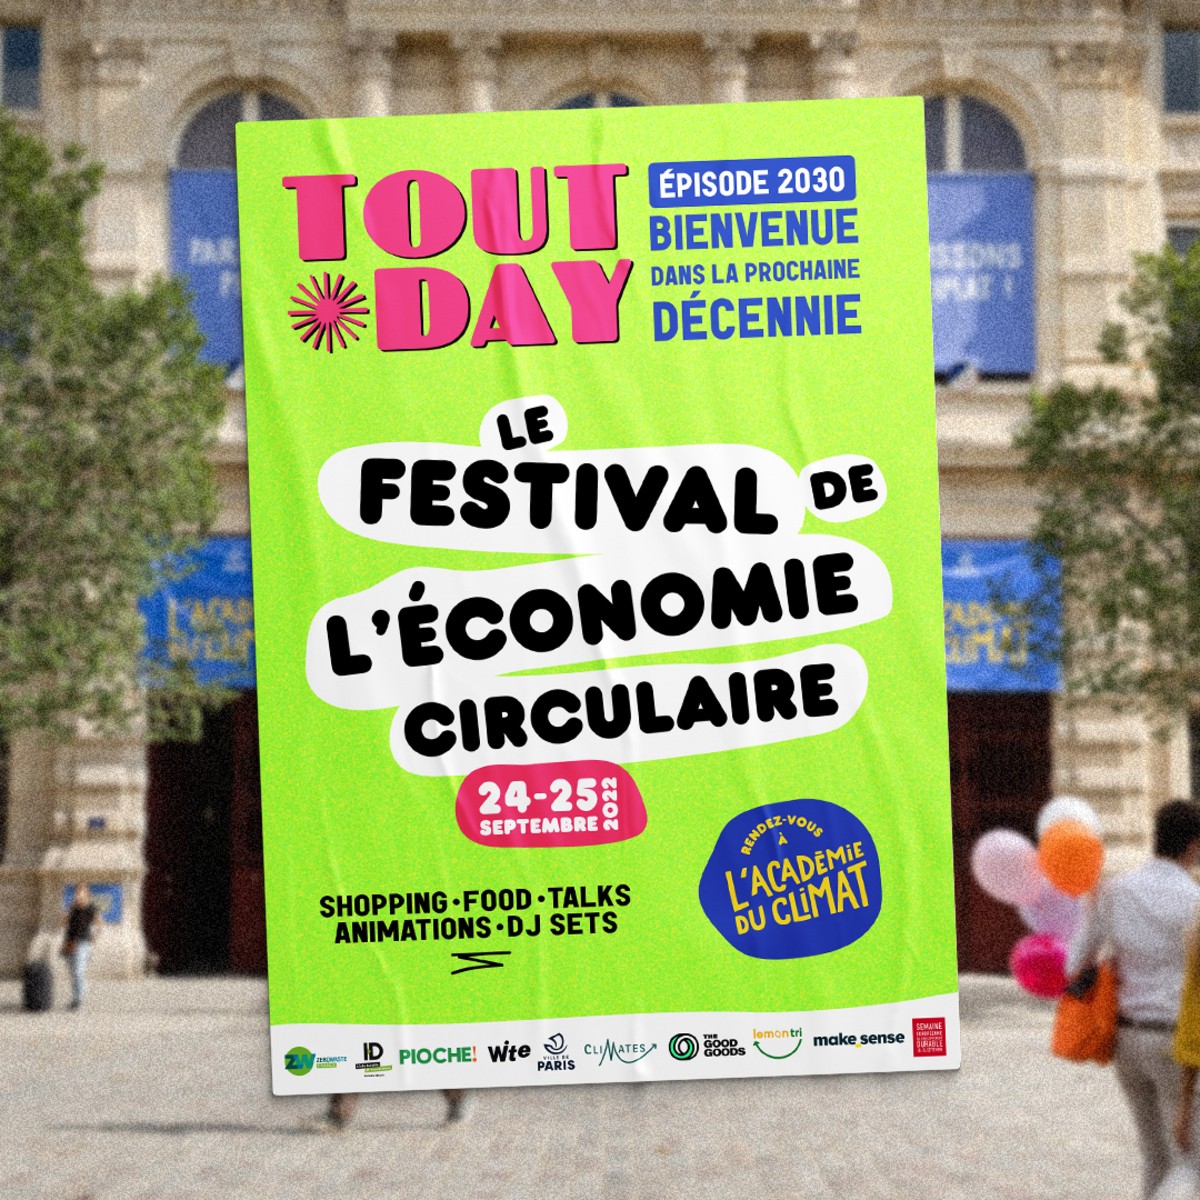 [Appel à manifestation d'intérêt] Participez au Festival de L'Économie circulaire les 24 et 25 septembre à L'Académie du Climat